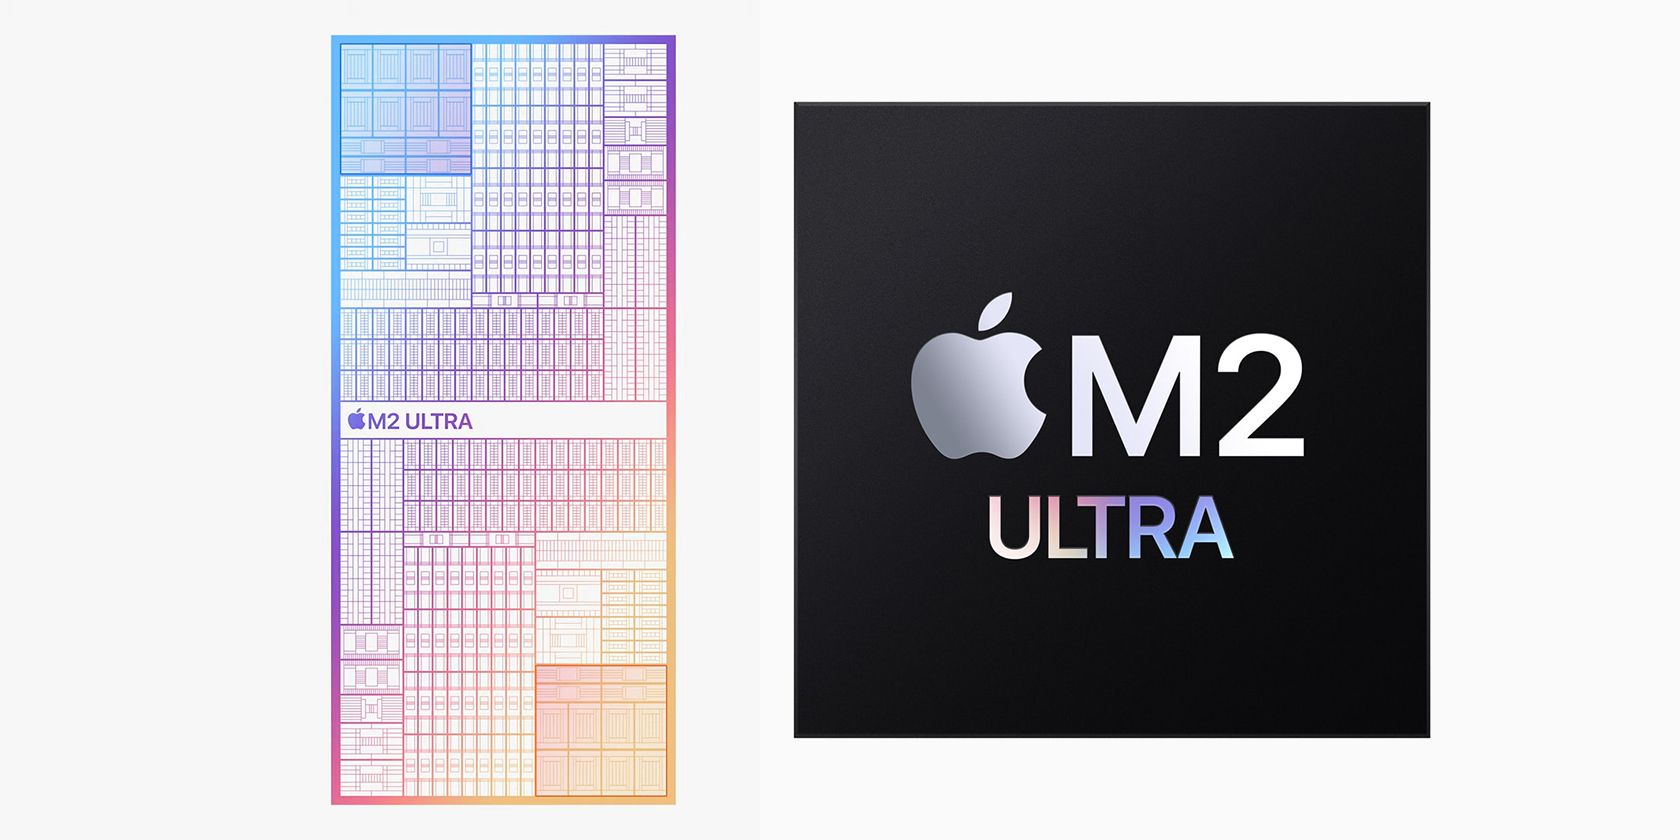 Hình ảnh quảng cáo chip M2 Ultra